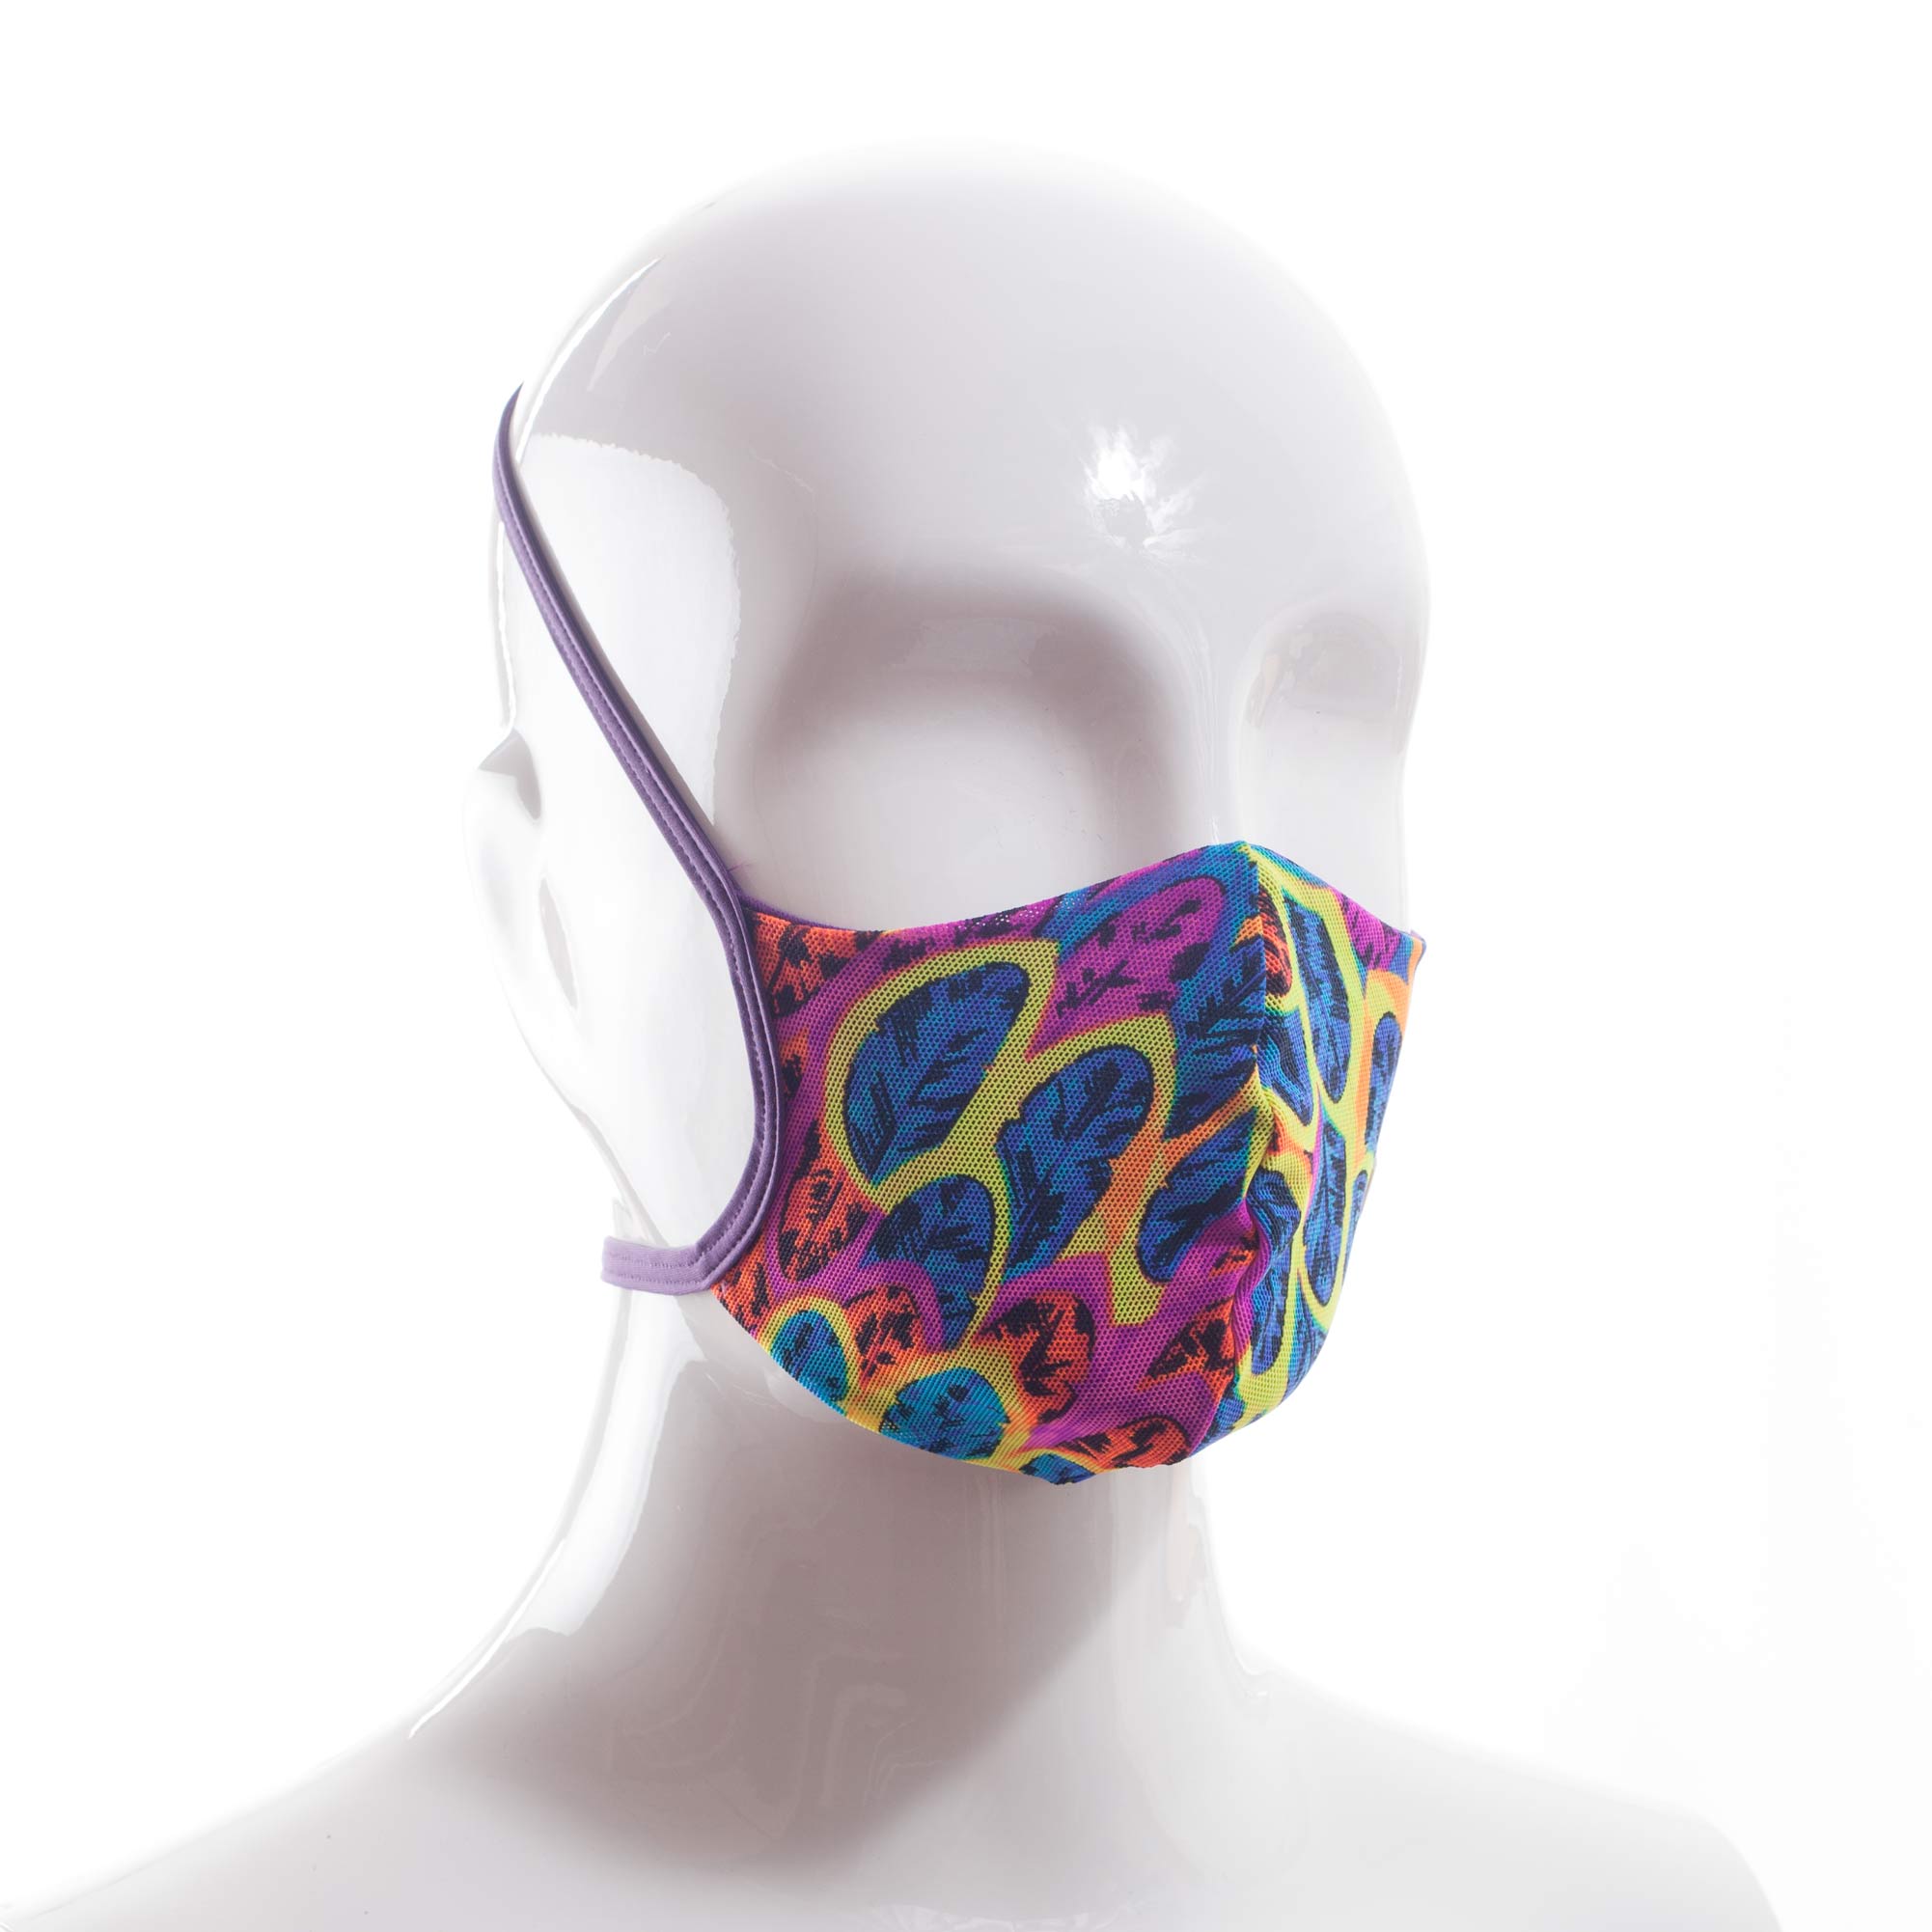 Die Baumwoll-Polyester Mund-Nasen Maske BWPM4Neonfeder von der Wonneberger Manufaktur ist eine textile Behelfsmaske, kein zertifizierter Mundschutz.

Sie schützt nur bedingt vor Ansteckung. Ihr eigentlicher Zweck ist es, den Atem des Trägers zu filtern und dadurch seine Umgebung zu schützen.

Daher muss die…